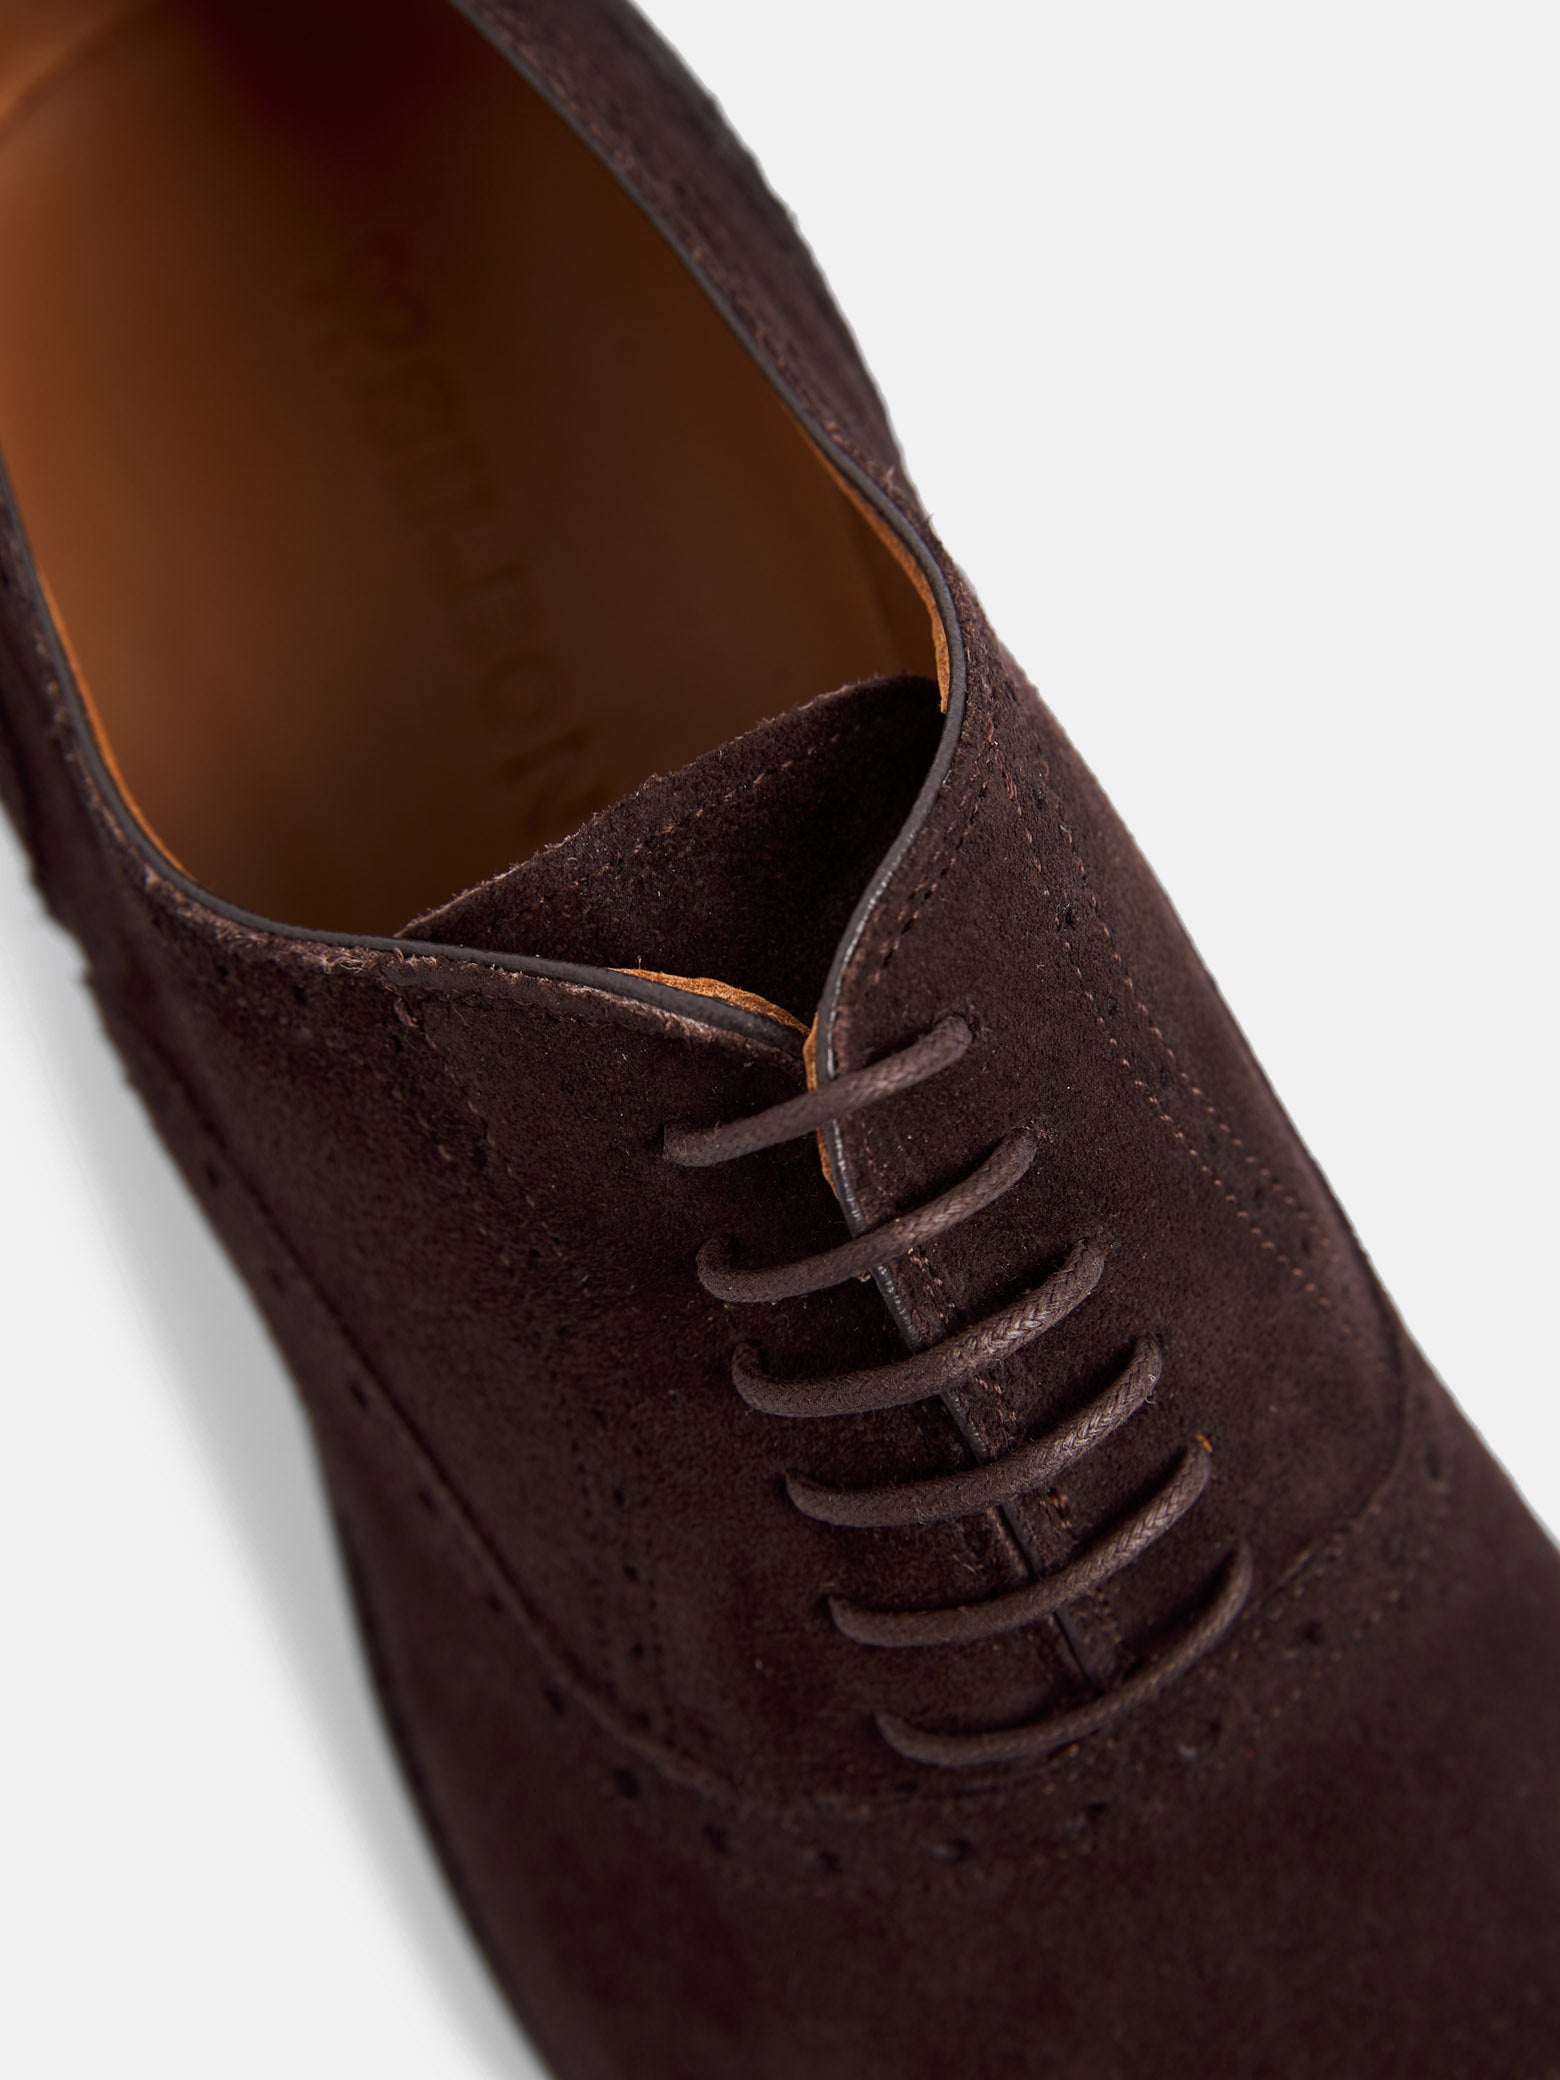 Zapato clasico ante perforado marron